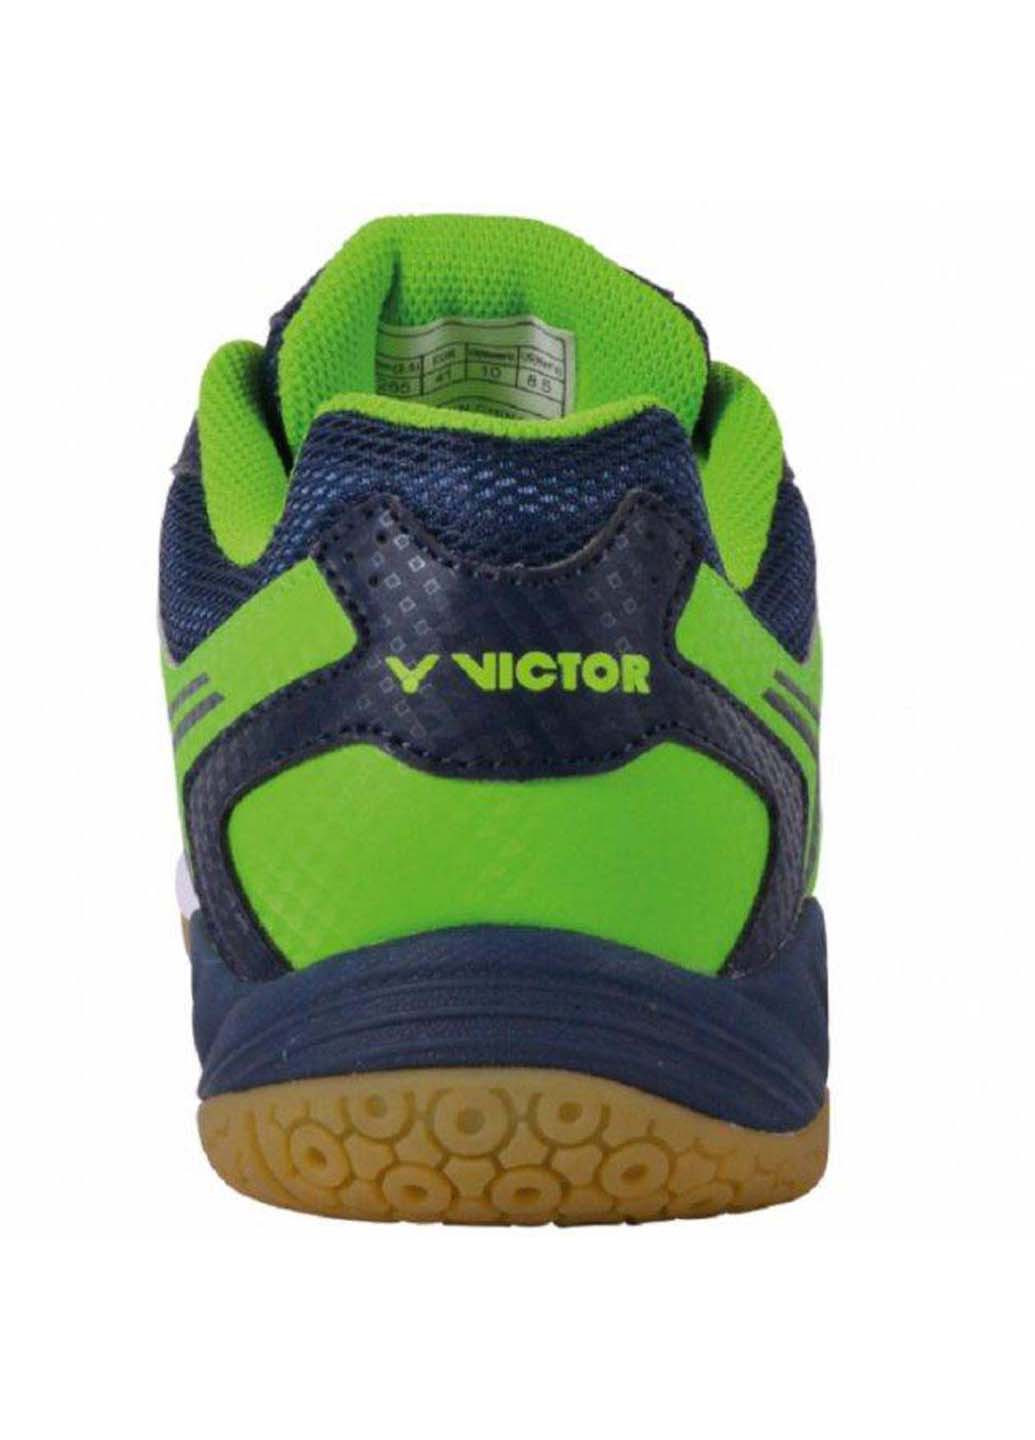 Комбіновані осінні кросівки для сквошу Victor A501 Indoor